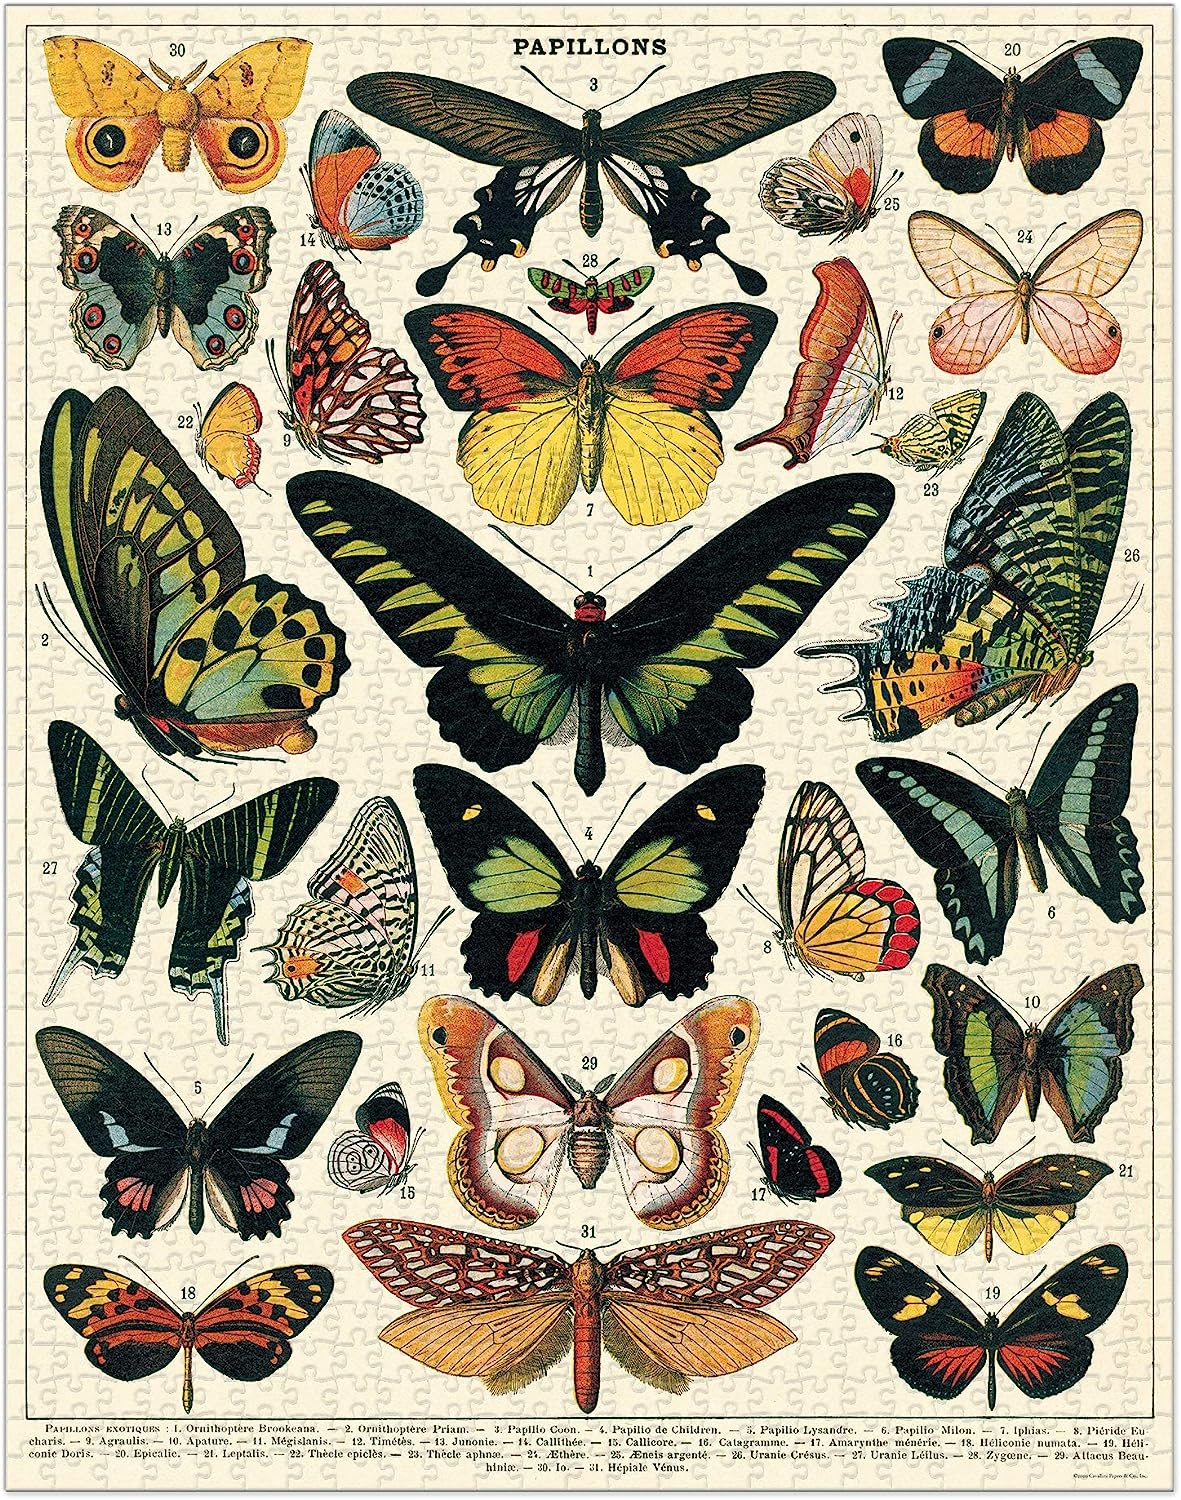 Cavallini Vintage Puzzle "Butterflies"